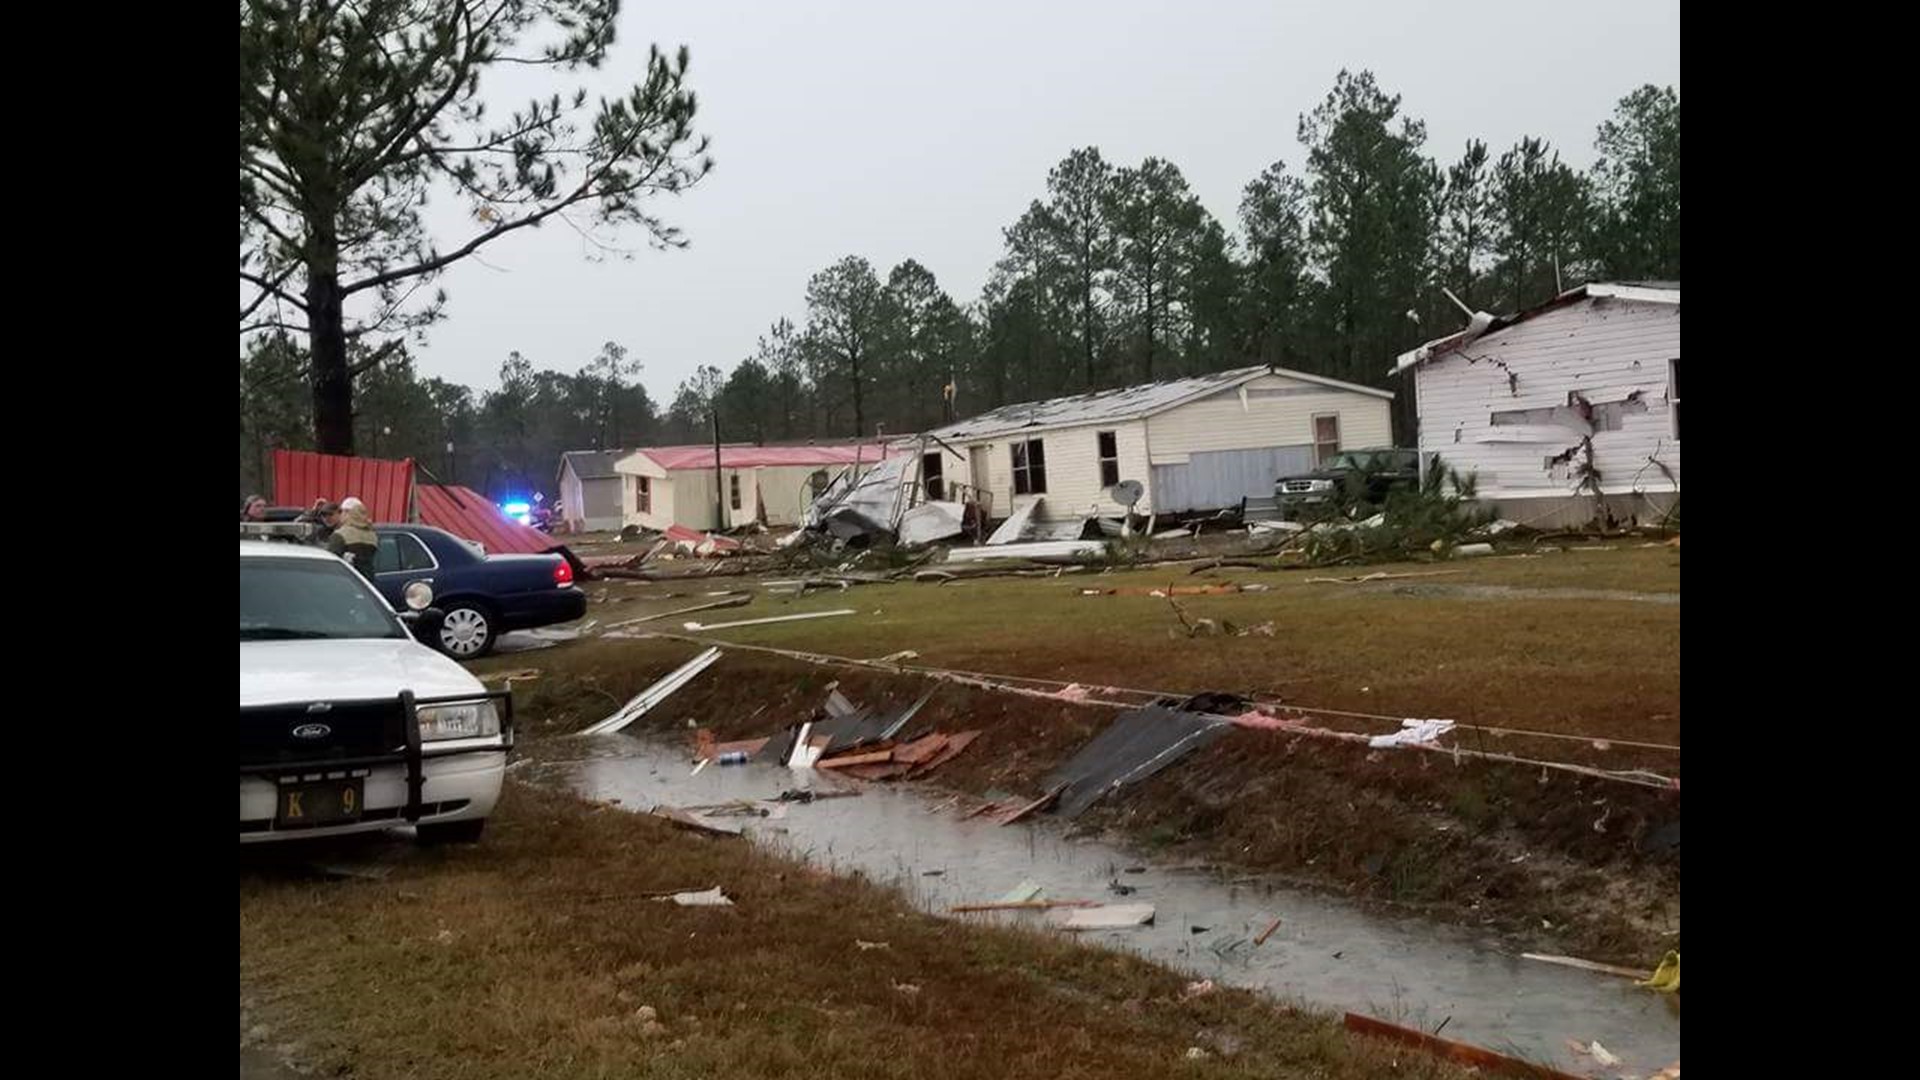 Seven killed, 5 missing in tornado in Adel, GA